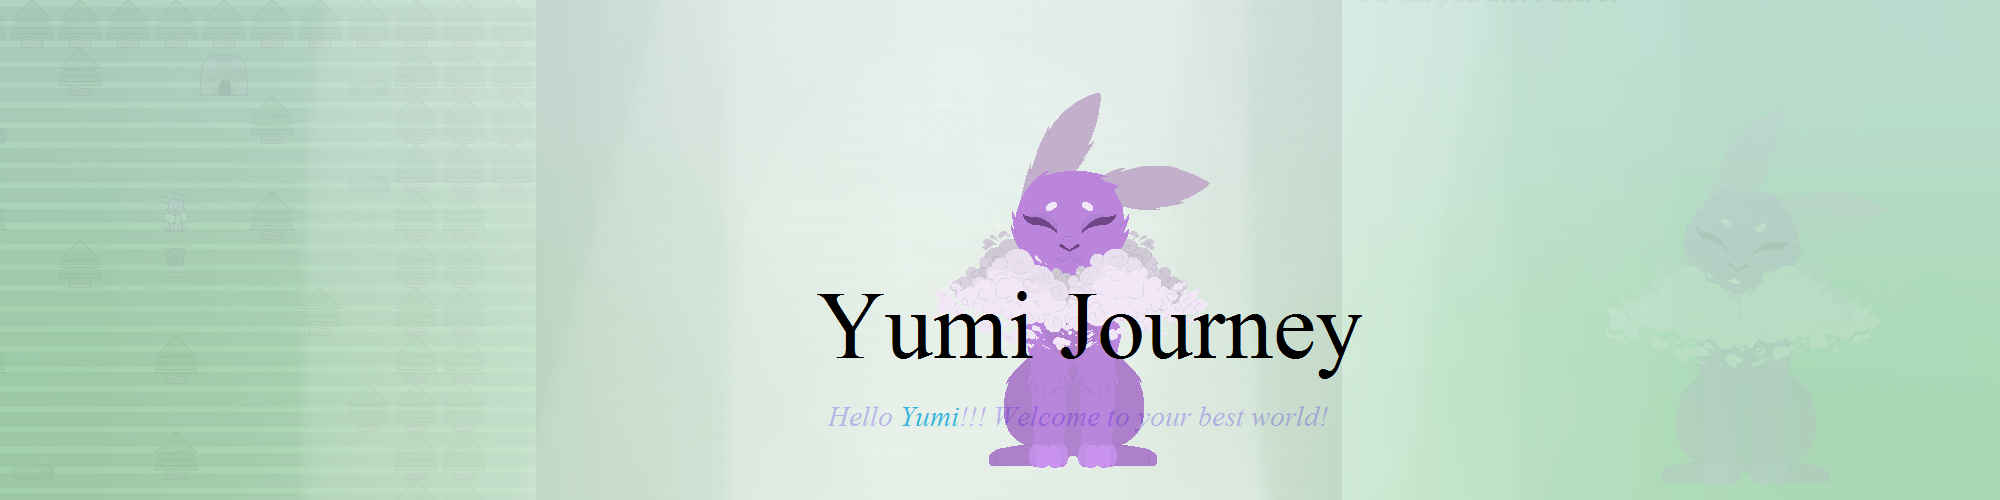 Yumi Journey